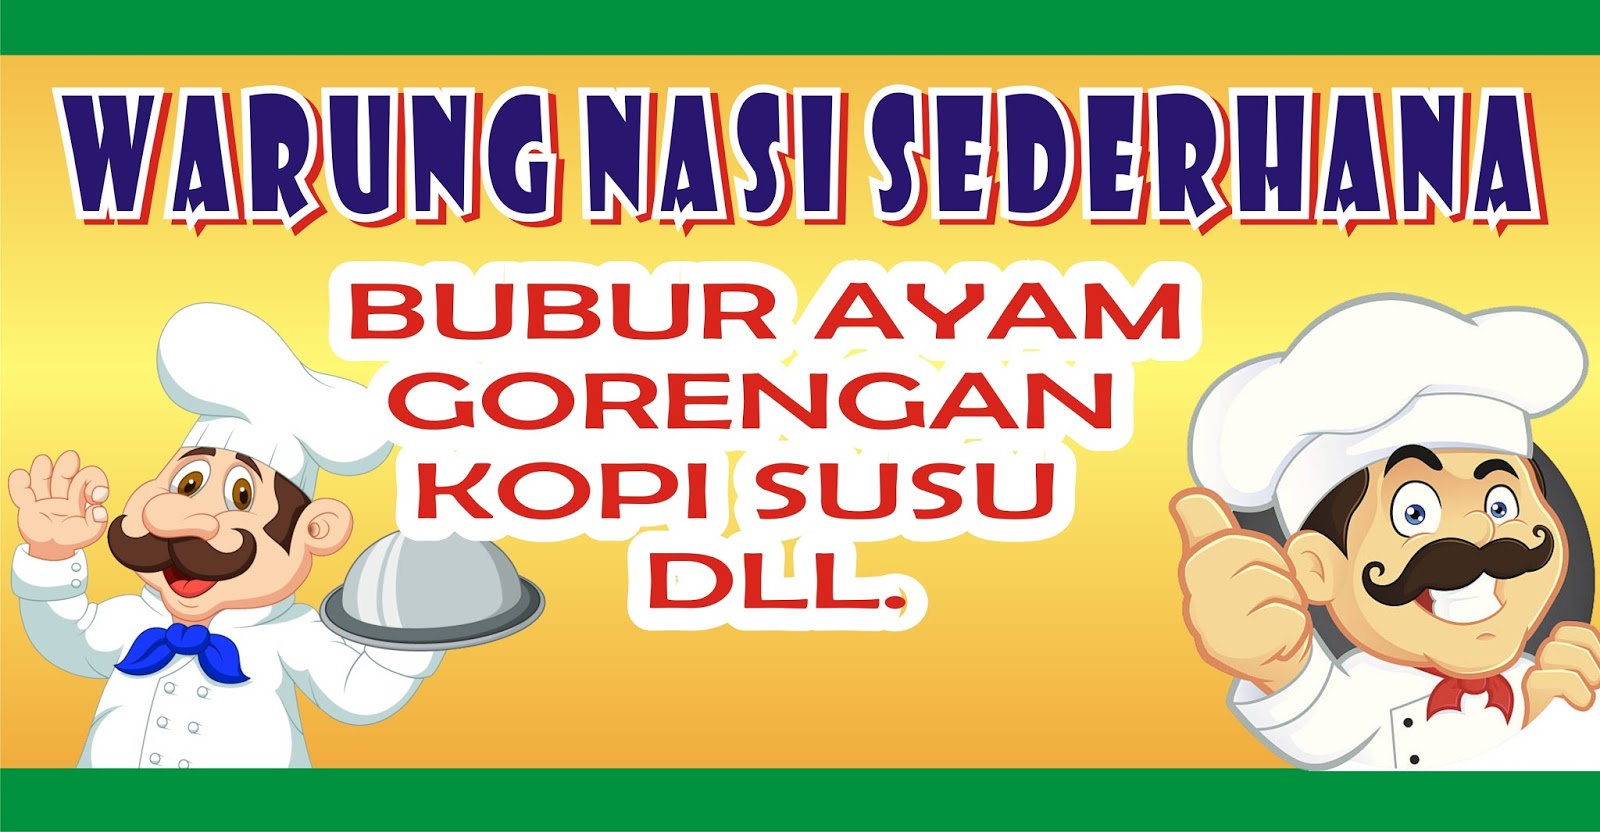 Contoh Spanduk Warung Nasi.cdr  KARYAKU